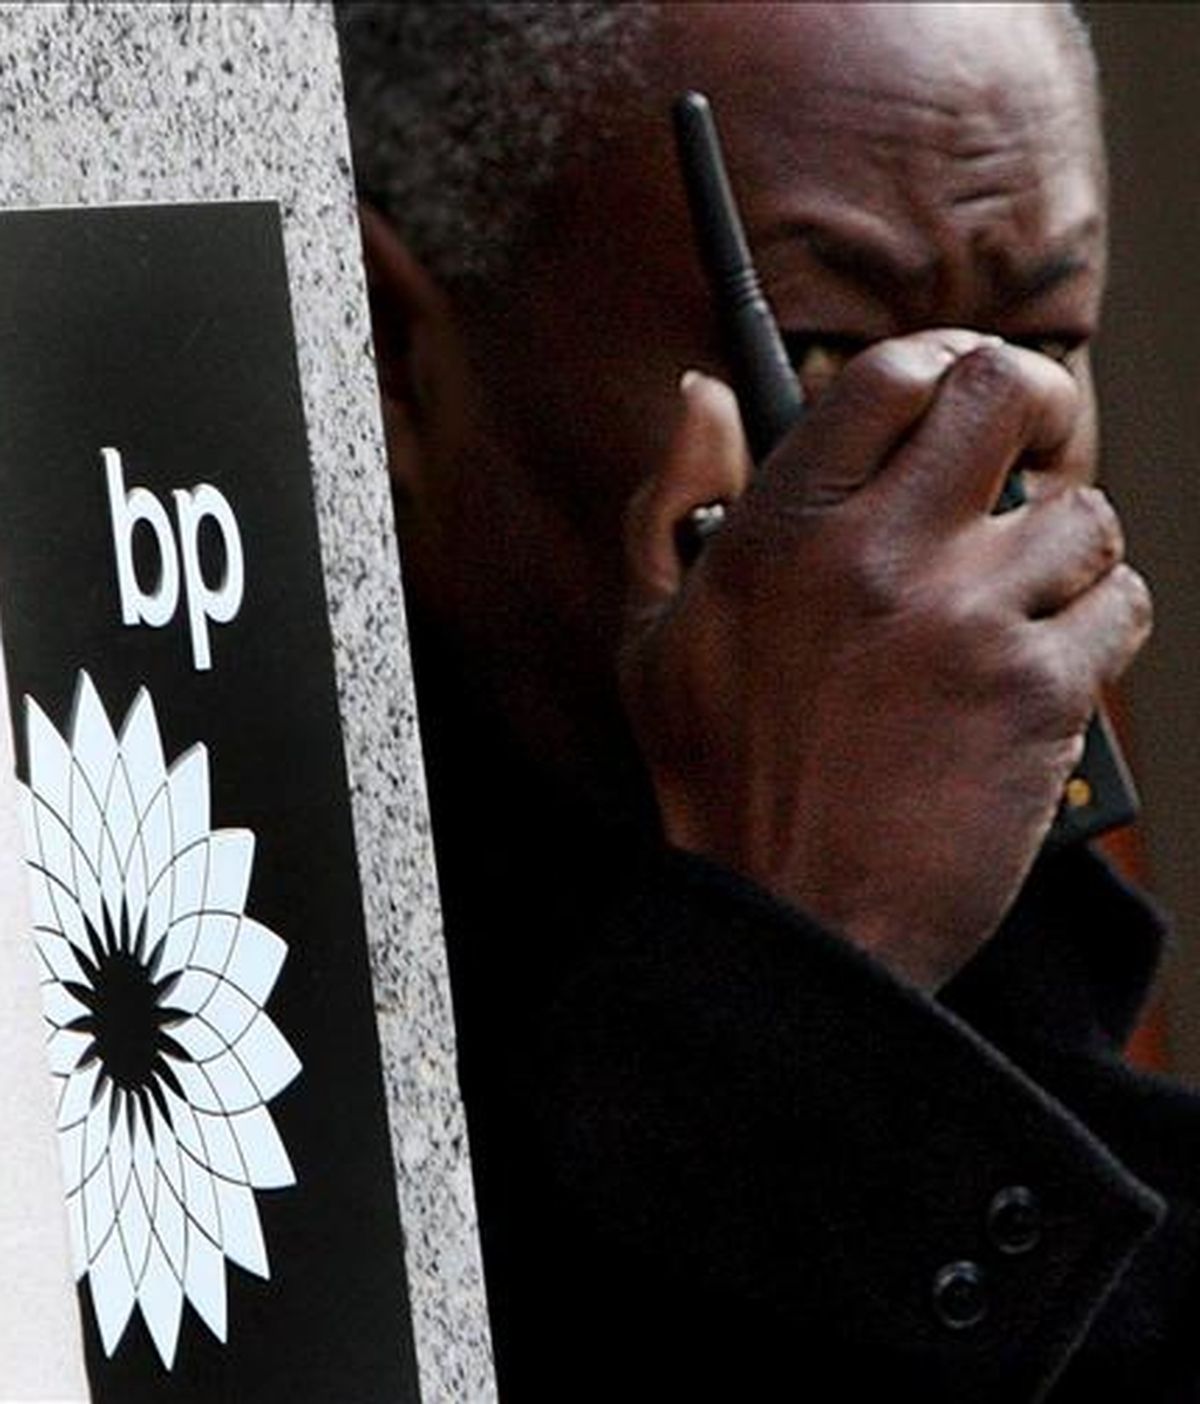 Un miembro de seguridad vigila la sede de la compañía petrolera British Petroleum en Londres, Reino Unido. EFE/Archivo